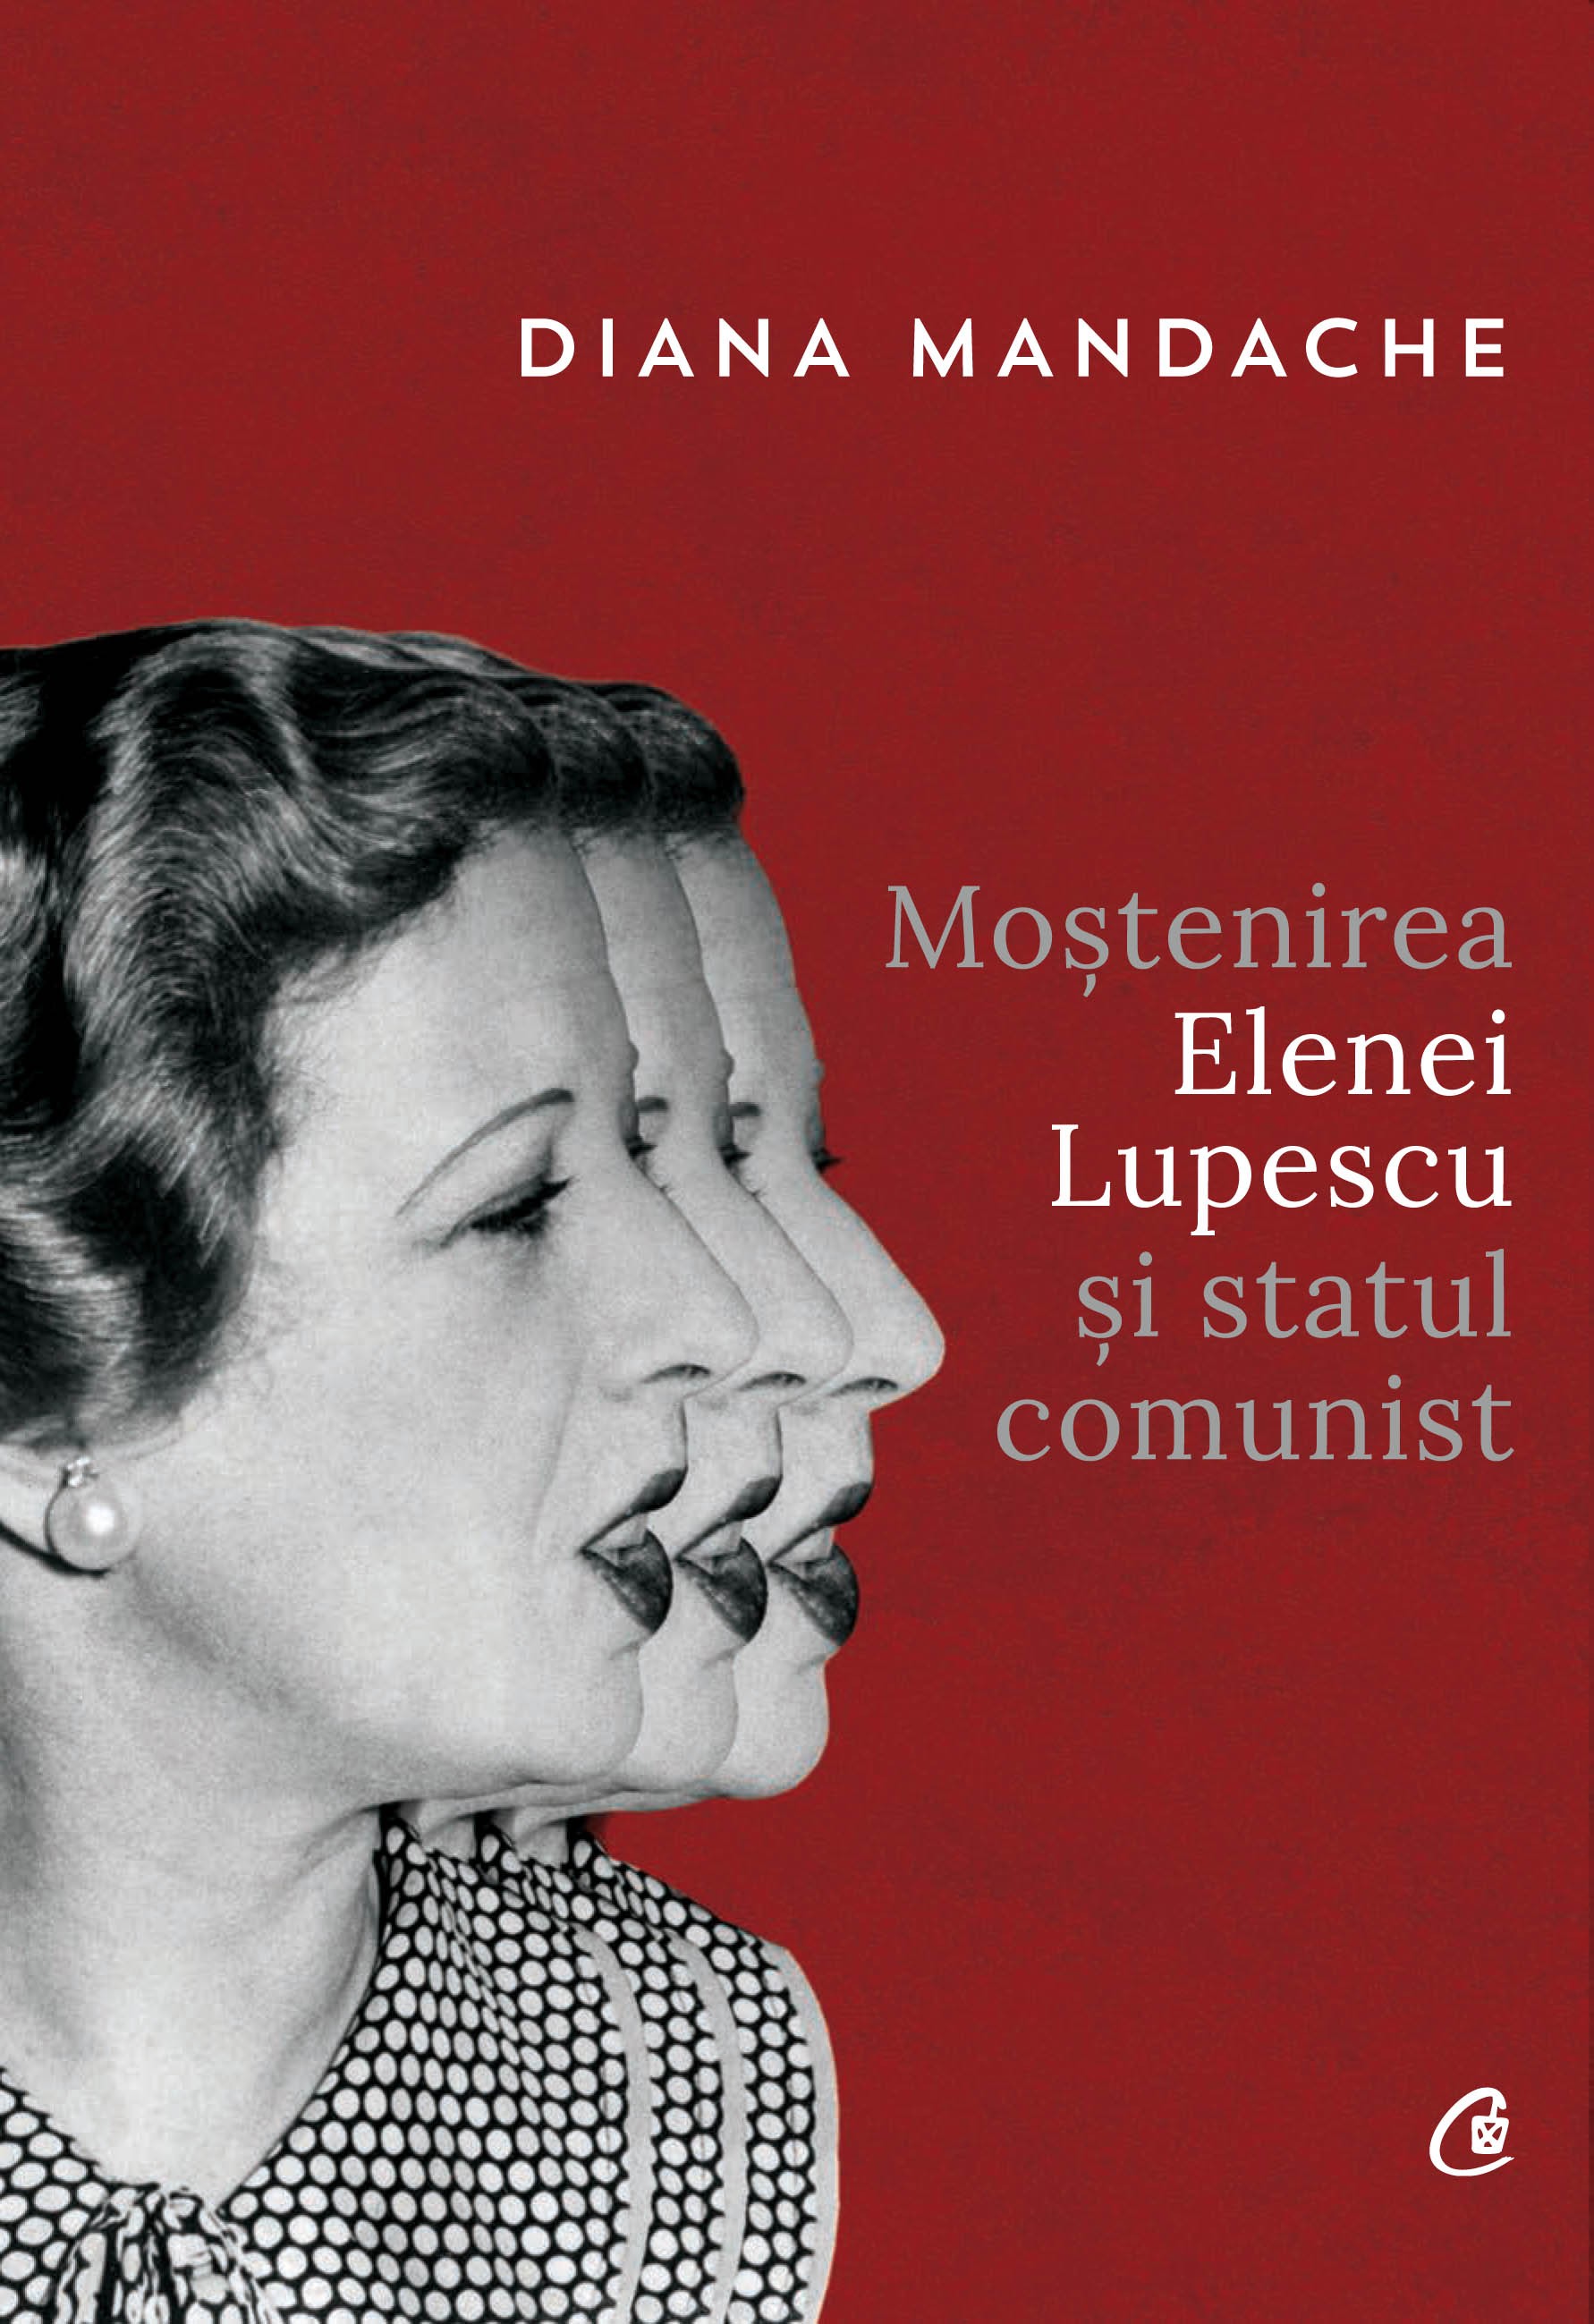 Mostenirea Elenei Lupescu si Statul Comunist | Diana Mandache Carte imagine 2022